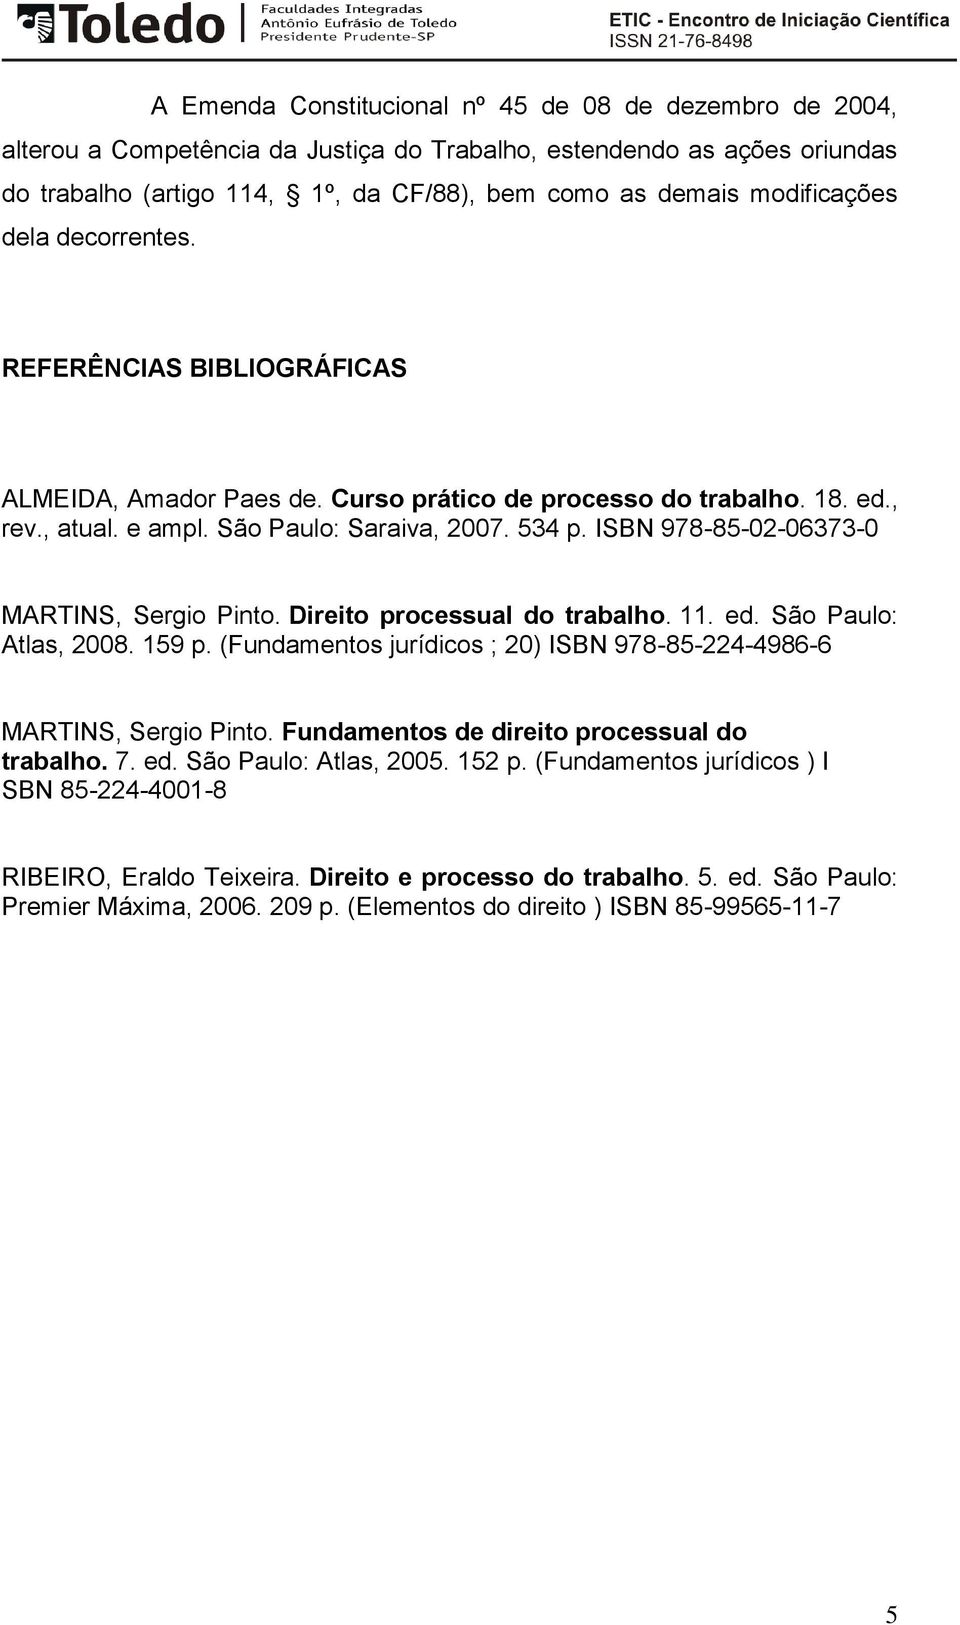 ISBN 978-85-02-06373-0 MARTINS, Sergio Pinto. Direito processual do trabalho. 11. ed. São Paulo: Atlas, 2008. 159 p. (Fundamentos jurídicos ; 20) ISBN 978-85-224-4986-6 MARTINS, Sergio Pinto.